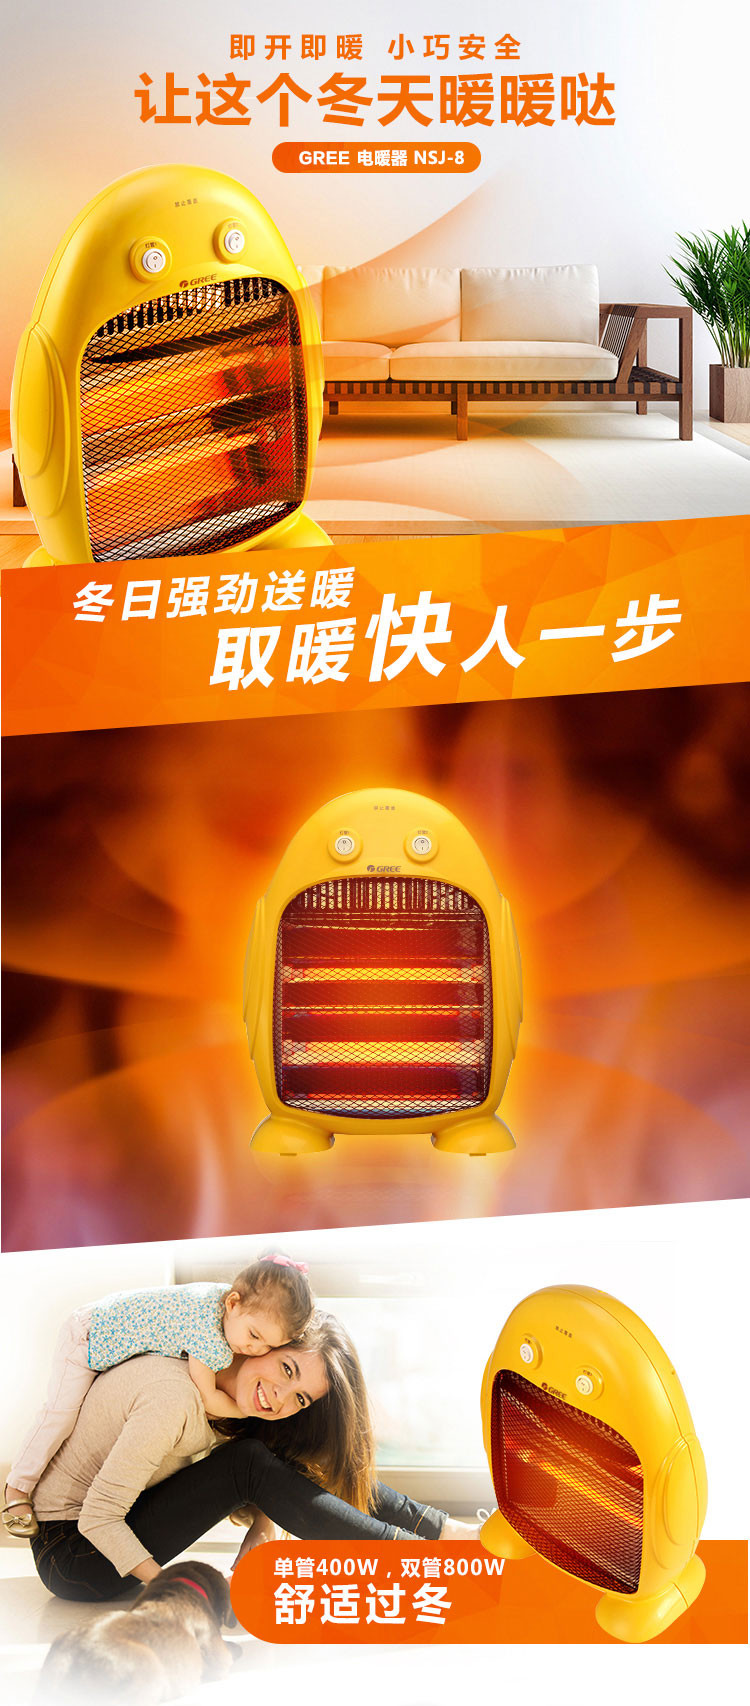 格力电暖器 远红外 快速制暖 小巧安全 NSJ-8 黄色